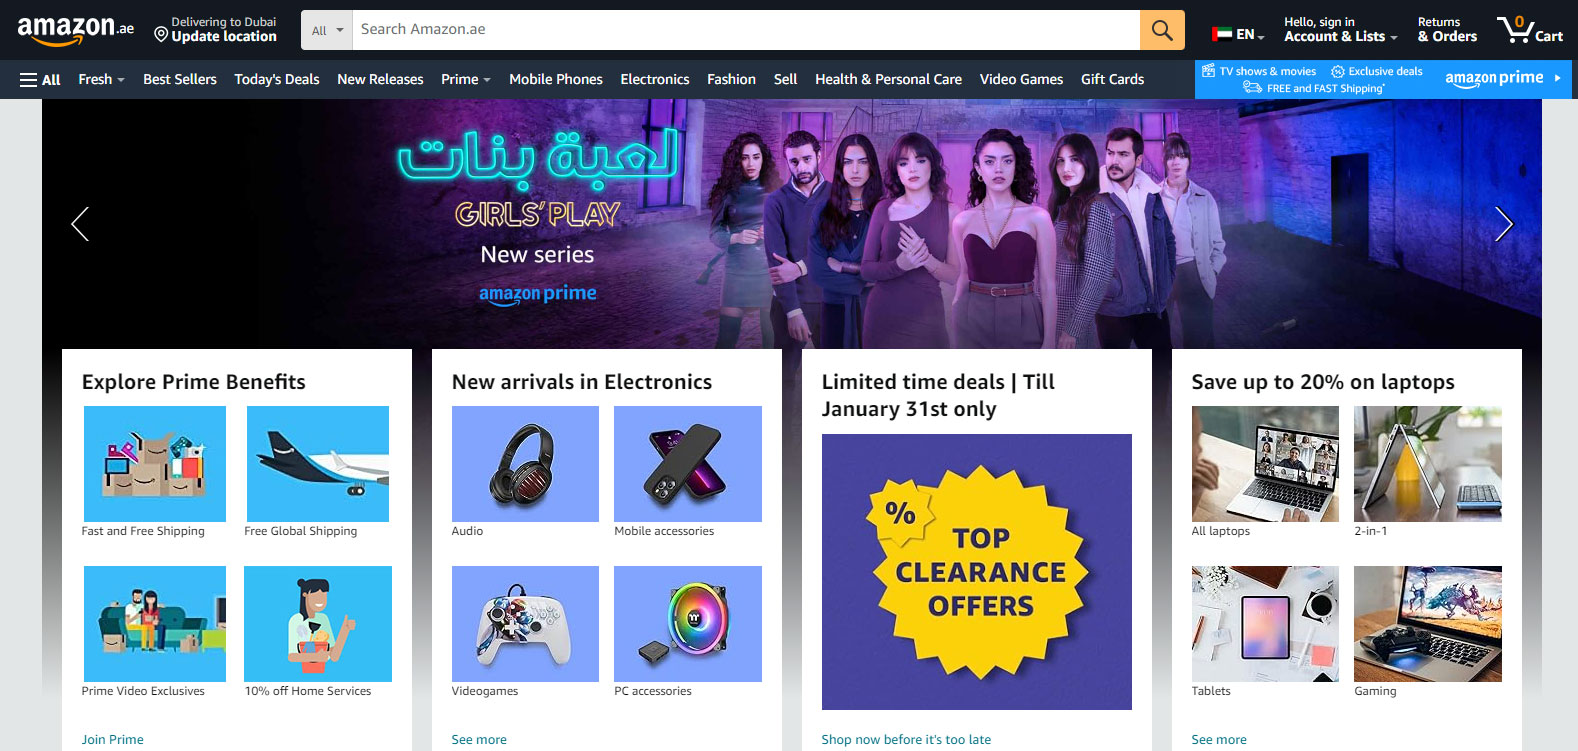 Amazon (Souq): Renowned E-Commerce Site in Dubai